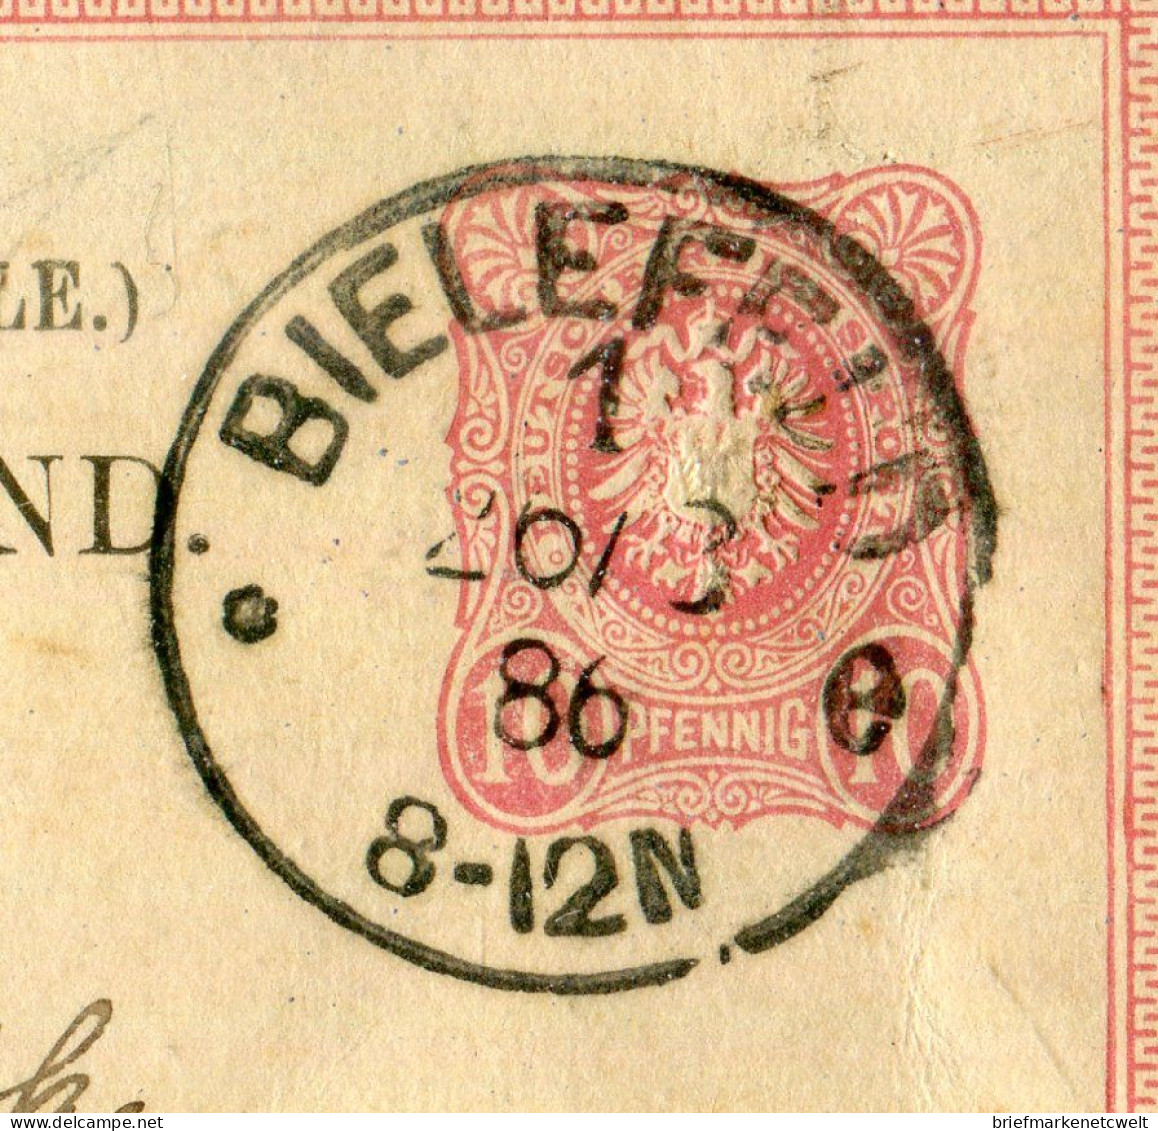 "DEUTSCHES REICH" 1886, "Klaucke"-K1 "BIELEFELD" Auf Postkarte Nach Italien (B1177) - Cartoline